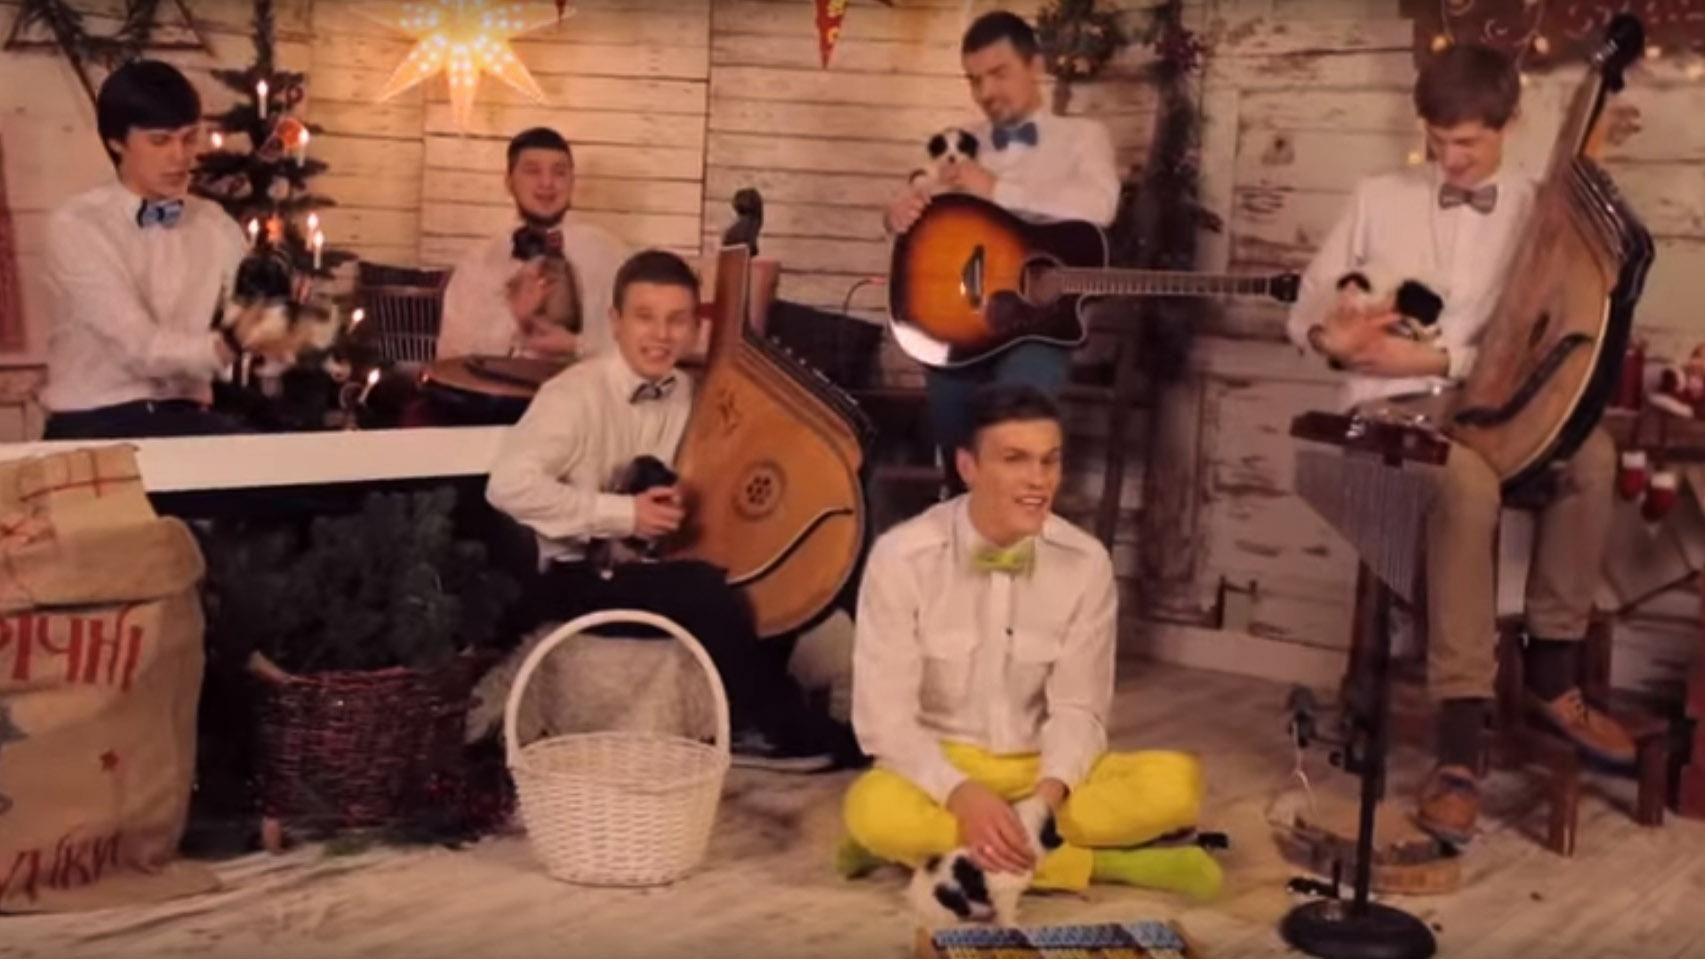 Рождественская песня Jingle Bells на украинском набрала миллион просмотров на Youtube